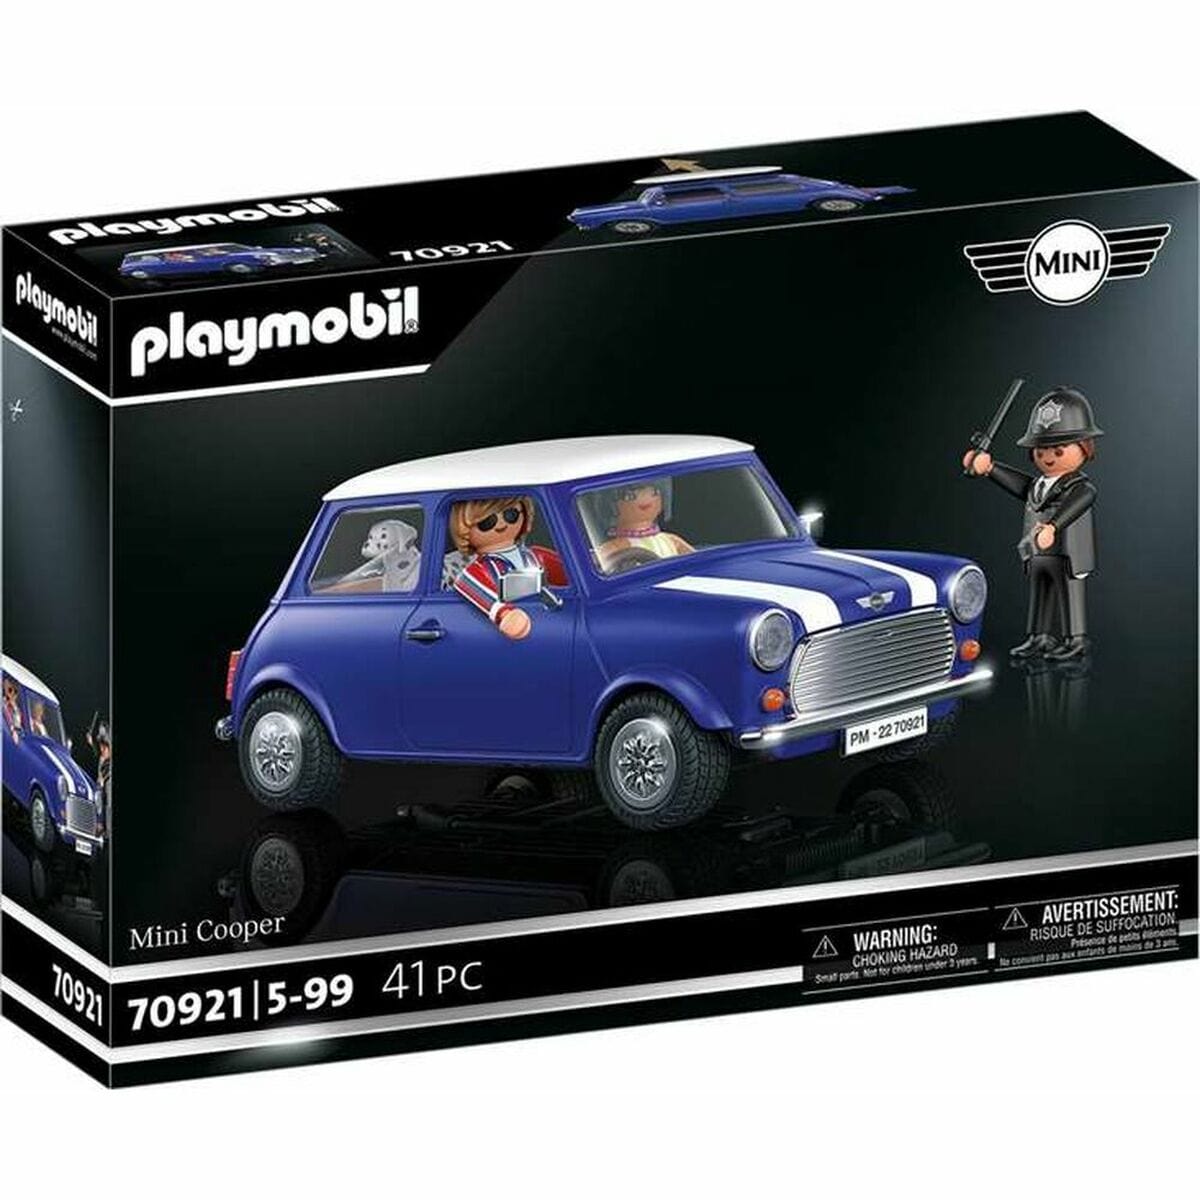 Playmobil Spielzeug | Kostüme > Spielzeug und Spiele > Weiteres spielzeug Playset Playmobil Mini Cooper 70921 (41 pcs)